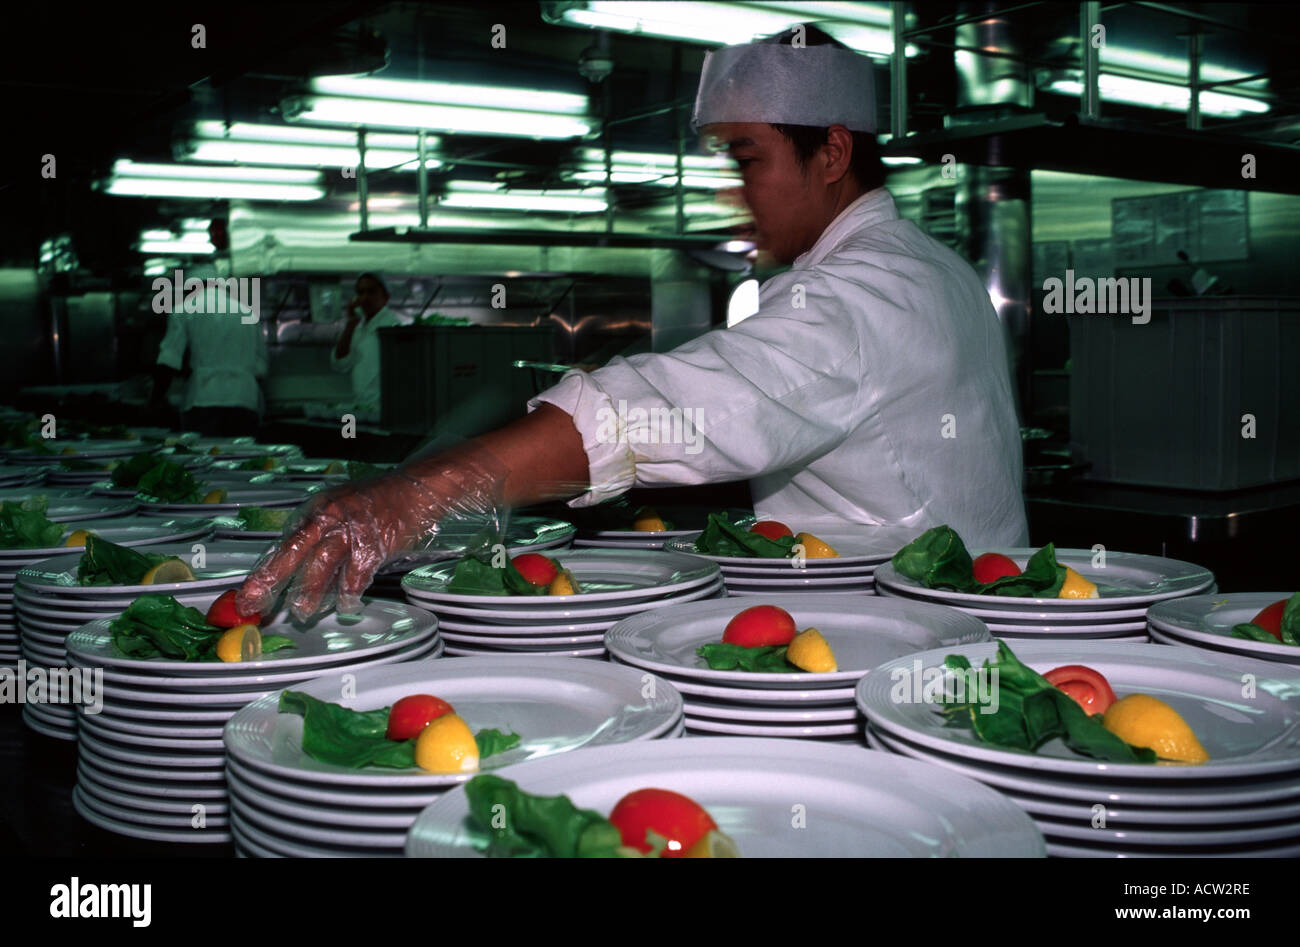 Philippine kitchen labourer Stock Photo